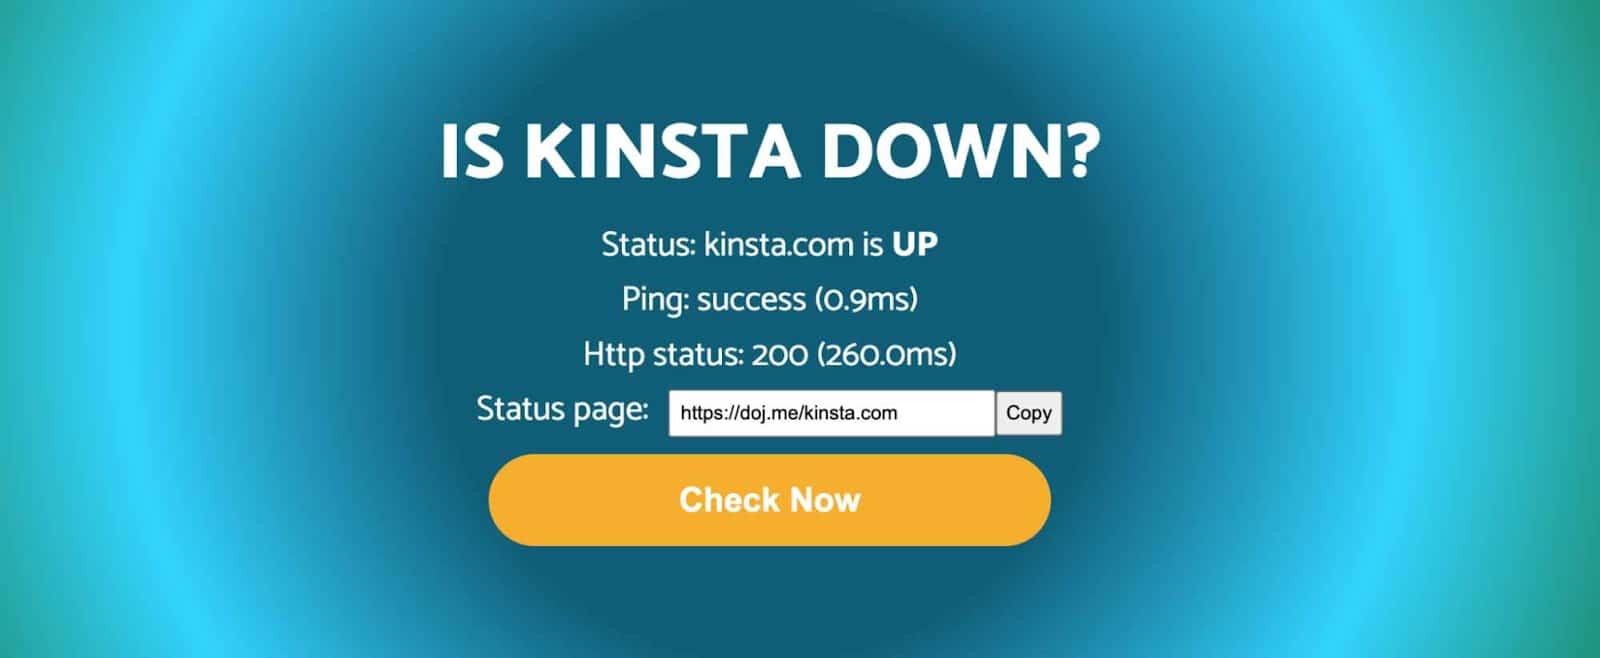 Schermata di Doj.me che chiede "Is Kinsta Down?" e di seguito fornisce i dati di uptime e lo status